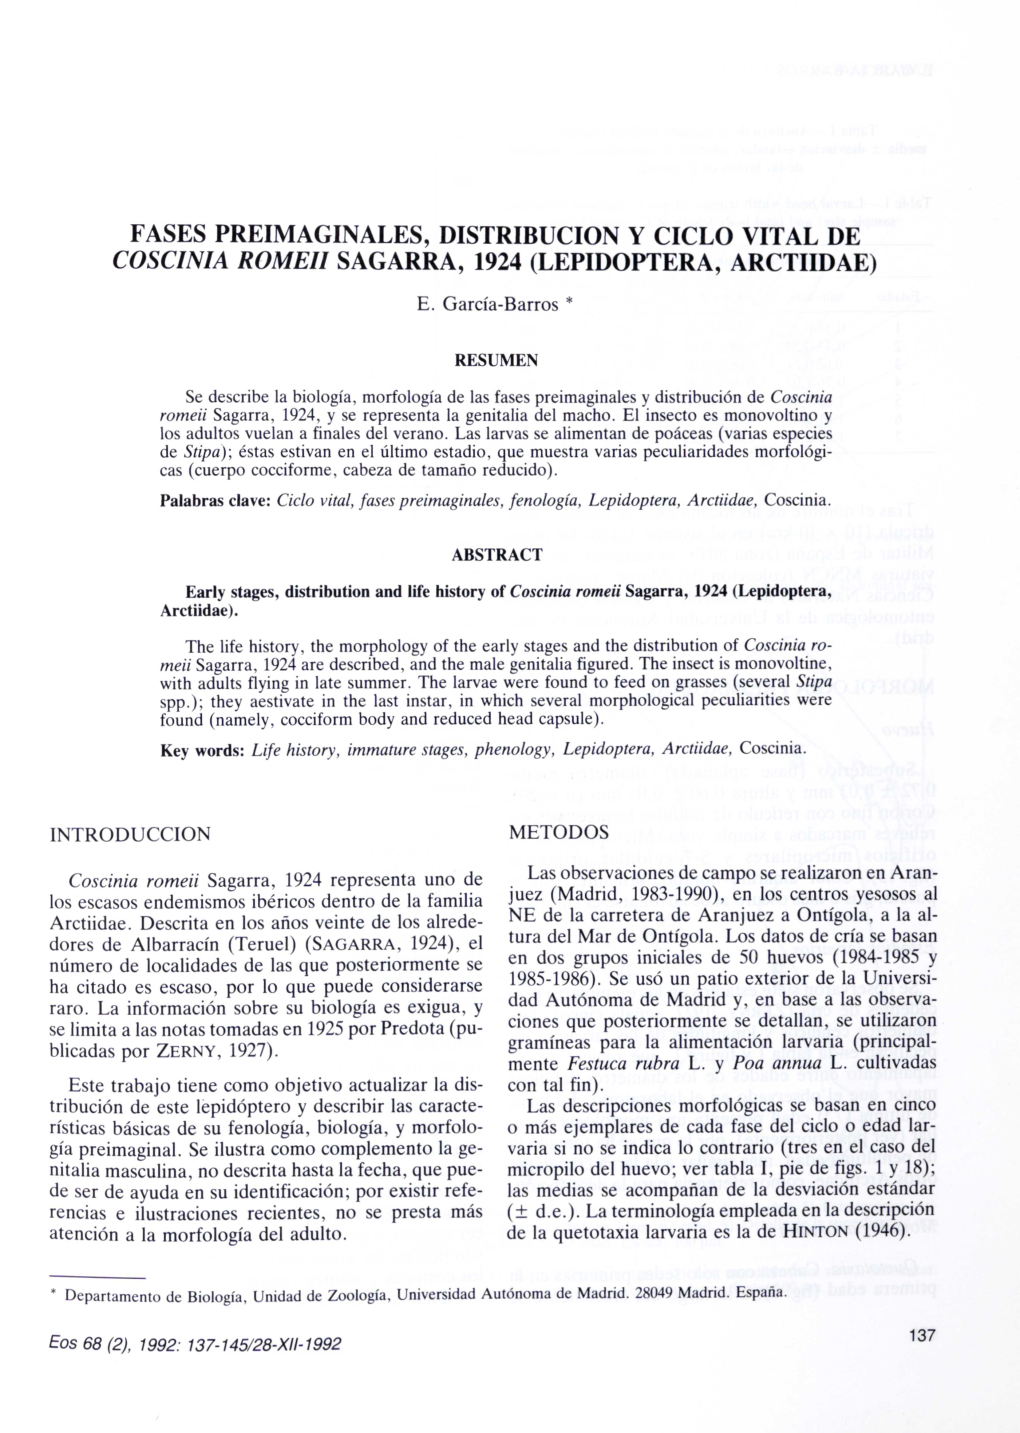 Fases Preimaginales, Distribucion Y Ciclo Vital De Coscinia Romei! Sagarra, 1924 (Lepidoptera, Arctiidae) E